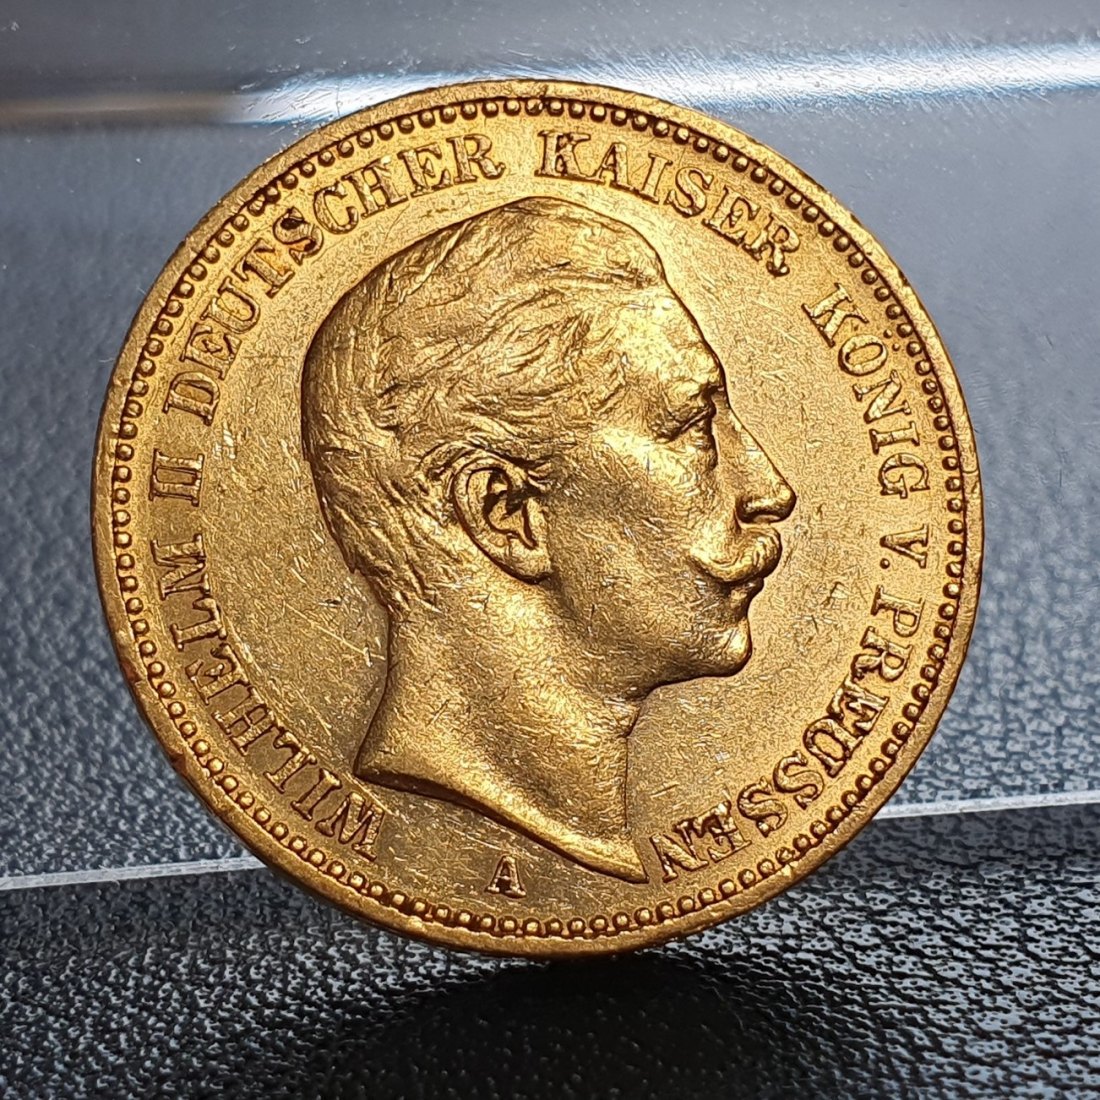  Kaiserreich 20 Mark 1896 A Wilhelm II Deutscher Kaiser König v. Preussen Goldmünze 7,17 g fein   